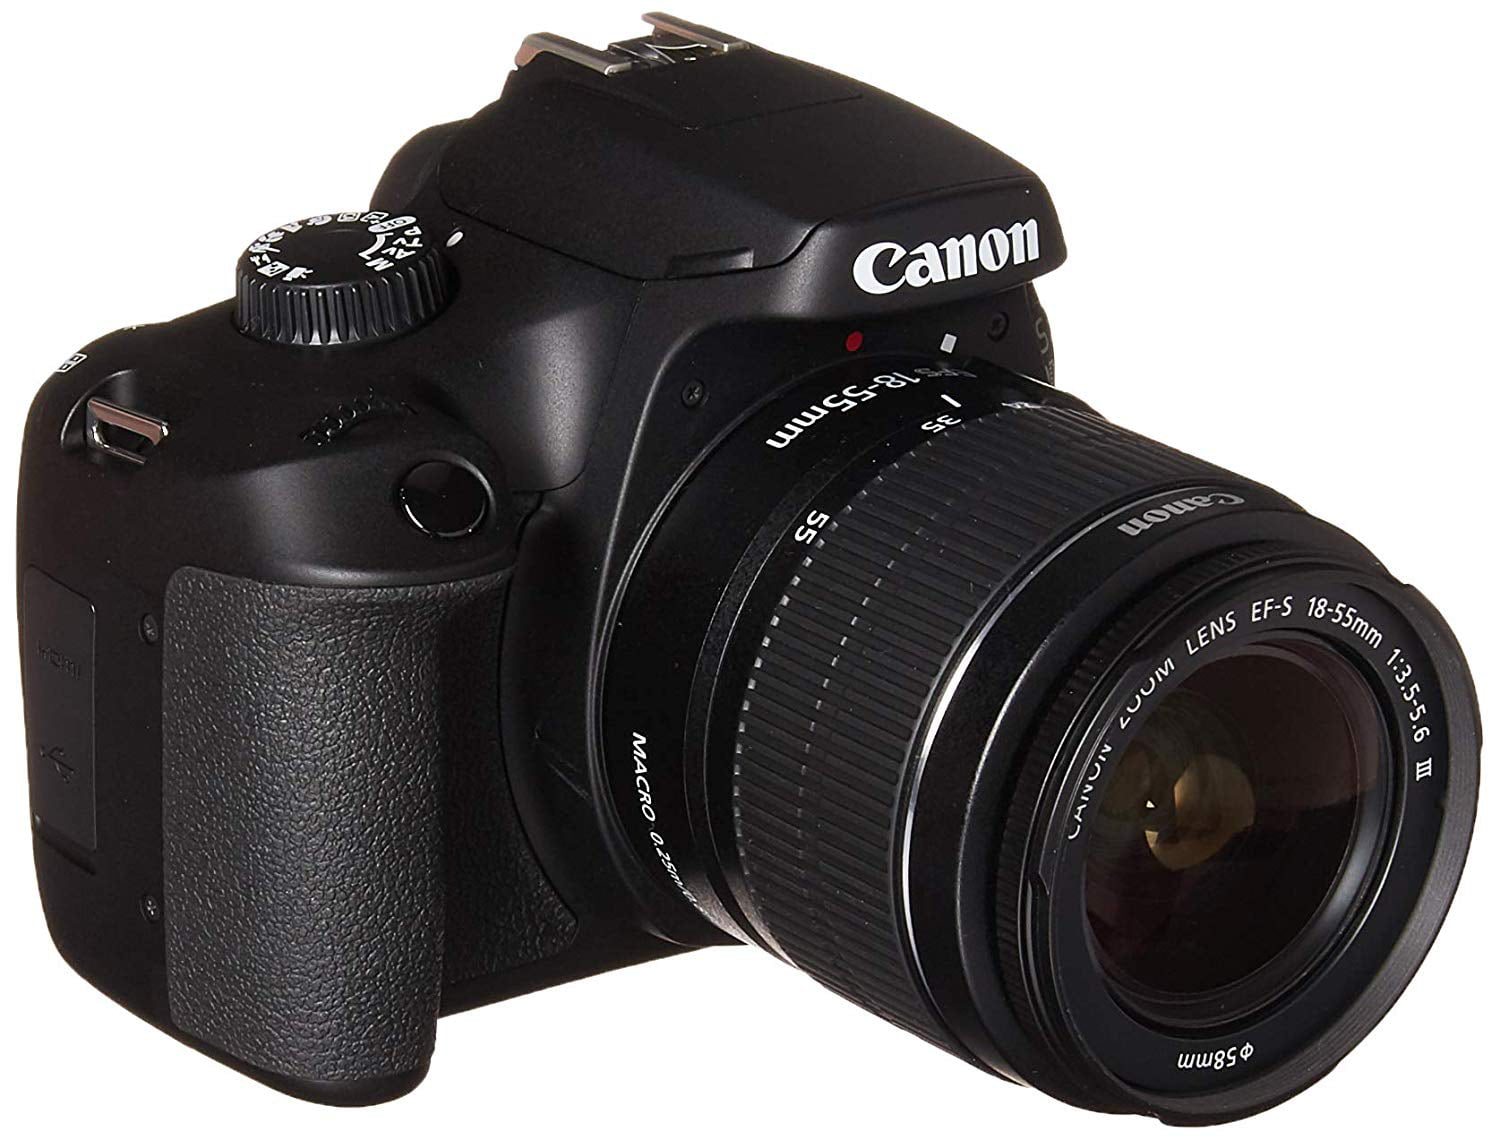 Bạn đang tìm kiếm một chiếc máy ảnh DSLR ưu tú từ một thương hiệu nổi tiếng? Đến với cửa hàng của chúng tôi và bạn sẽ không bao giờ phải hối tiếc. Với máy ảnh DSLR Canon EOS 4000D EF-S 18-55 mm f/3.5-5.6 III Lens, bạn sẽ có thể tận hưởng chất lượng ảnh tuyệt vời và tính năng đặc biệt của một chiếc máy ảnh DSLR.